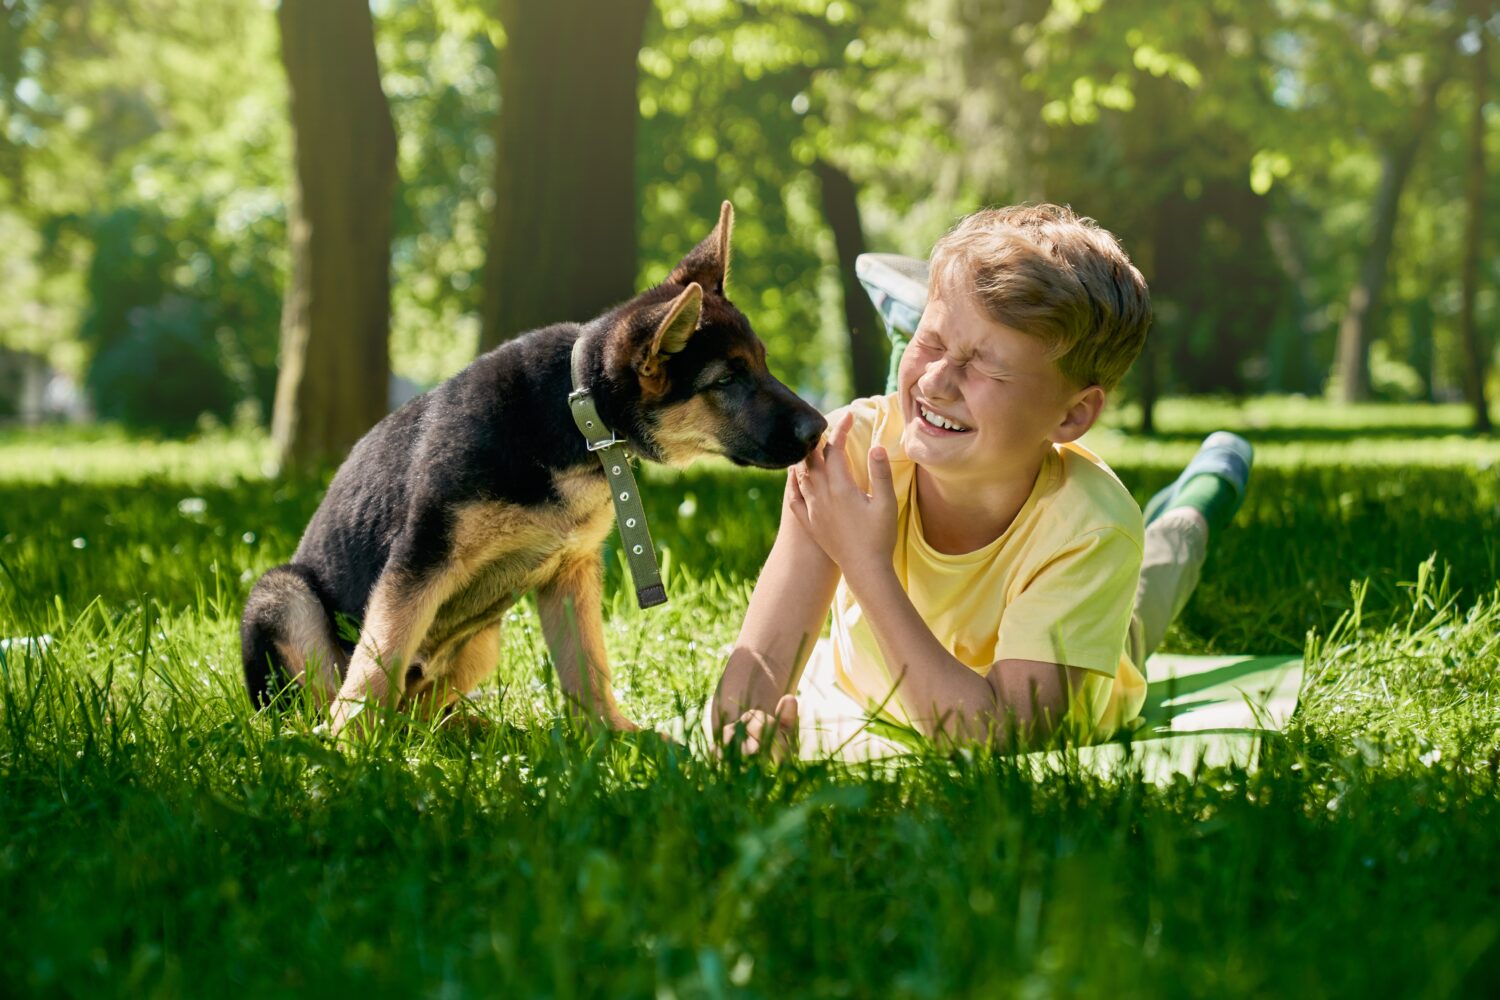 Cucciolo di pastore tedesco che lecca le mani del ragazzo sorridente al parco cittadino.  Bambino gioioso che gioca con il suo cagnolino durante le giornate soleggiate all'aperto.